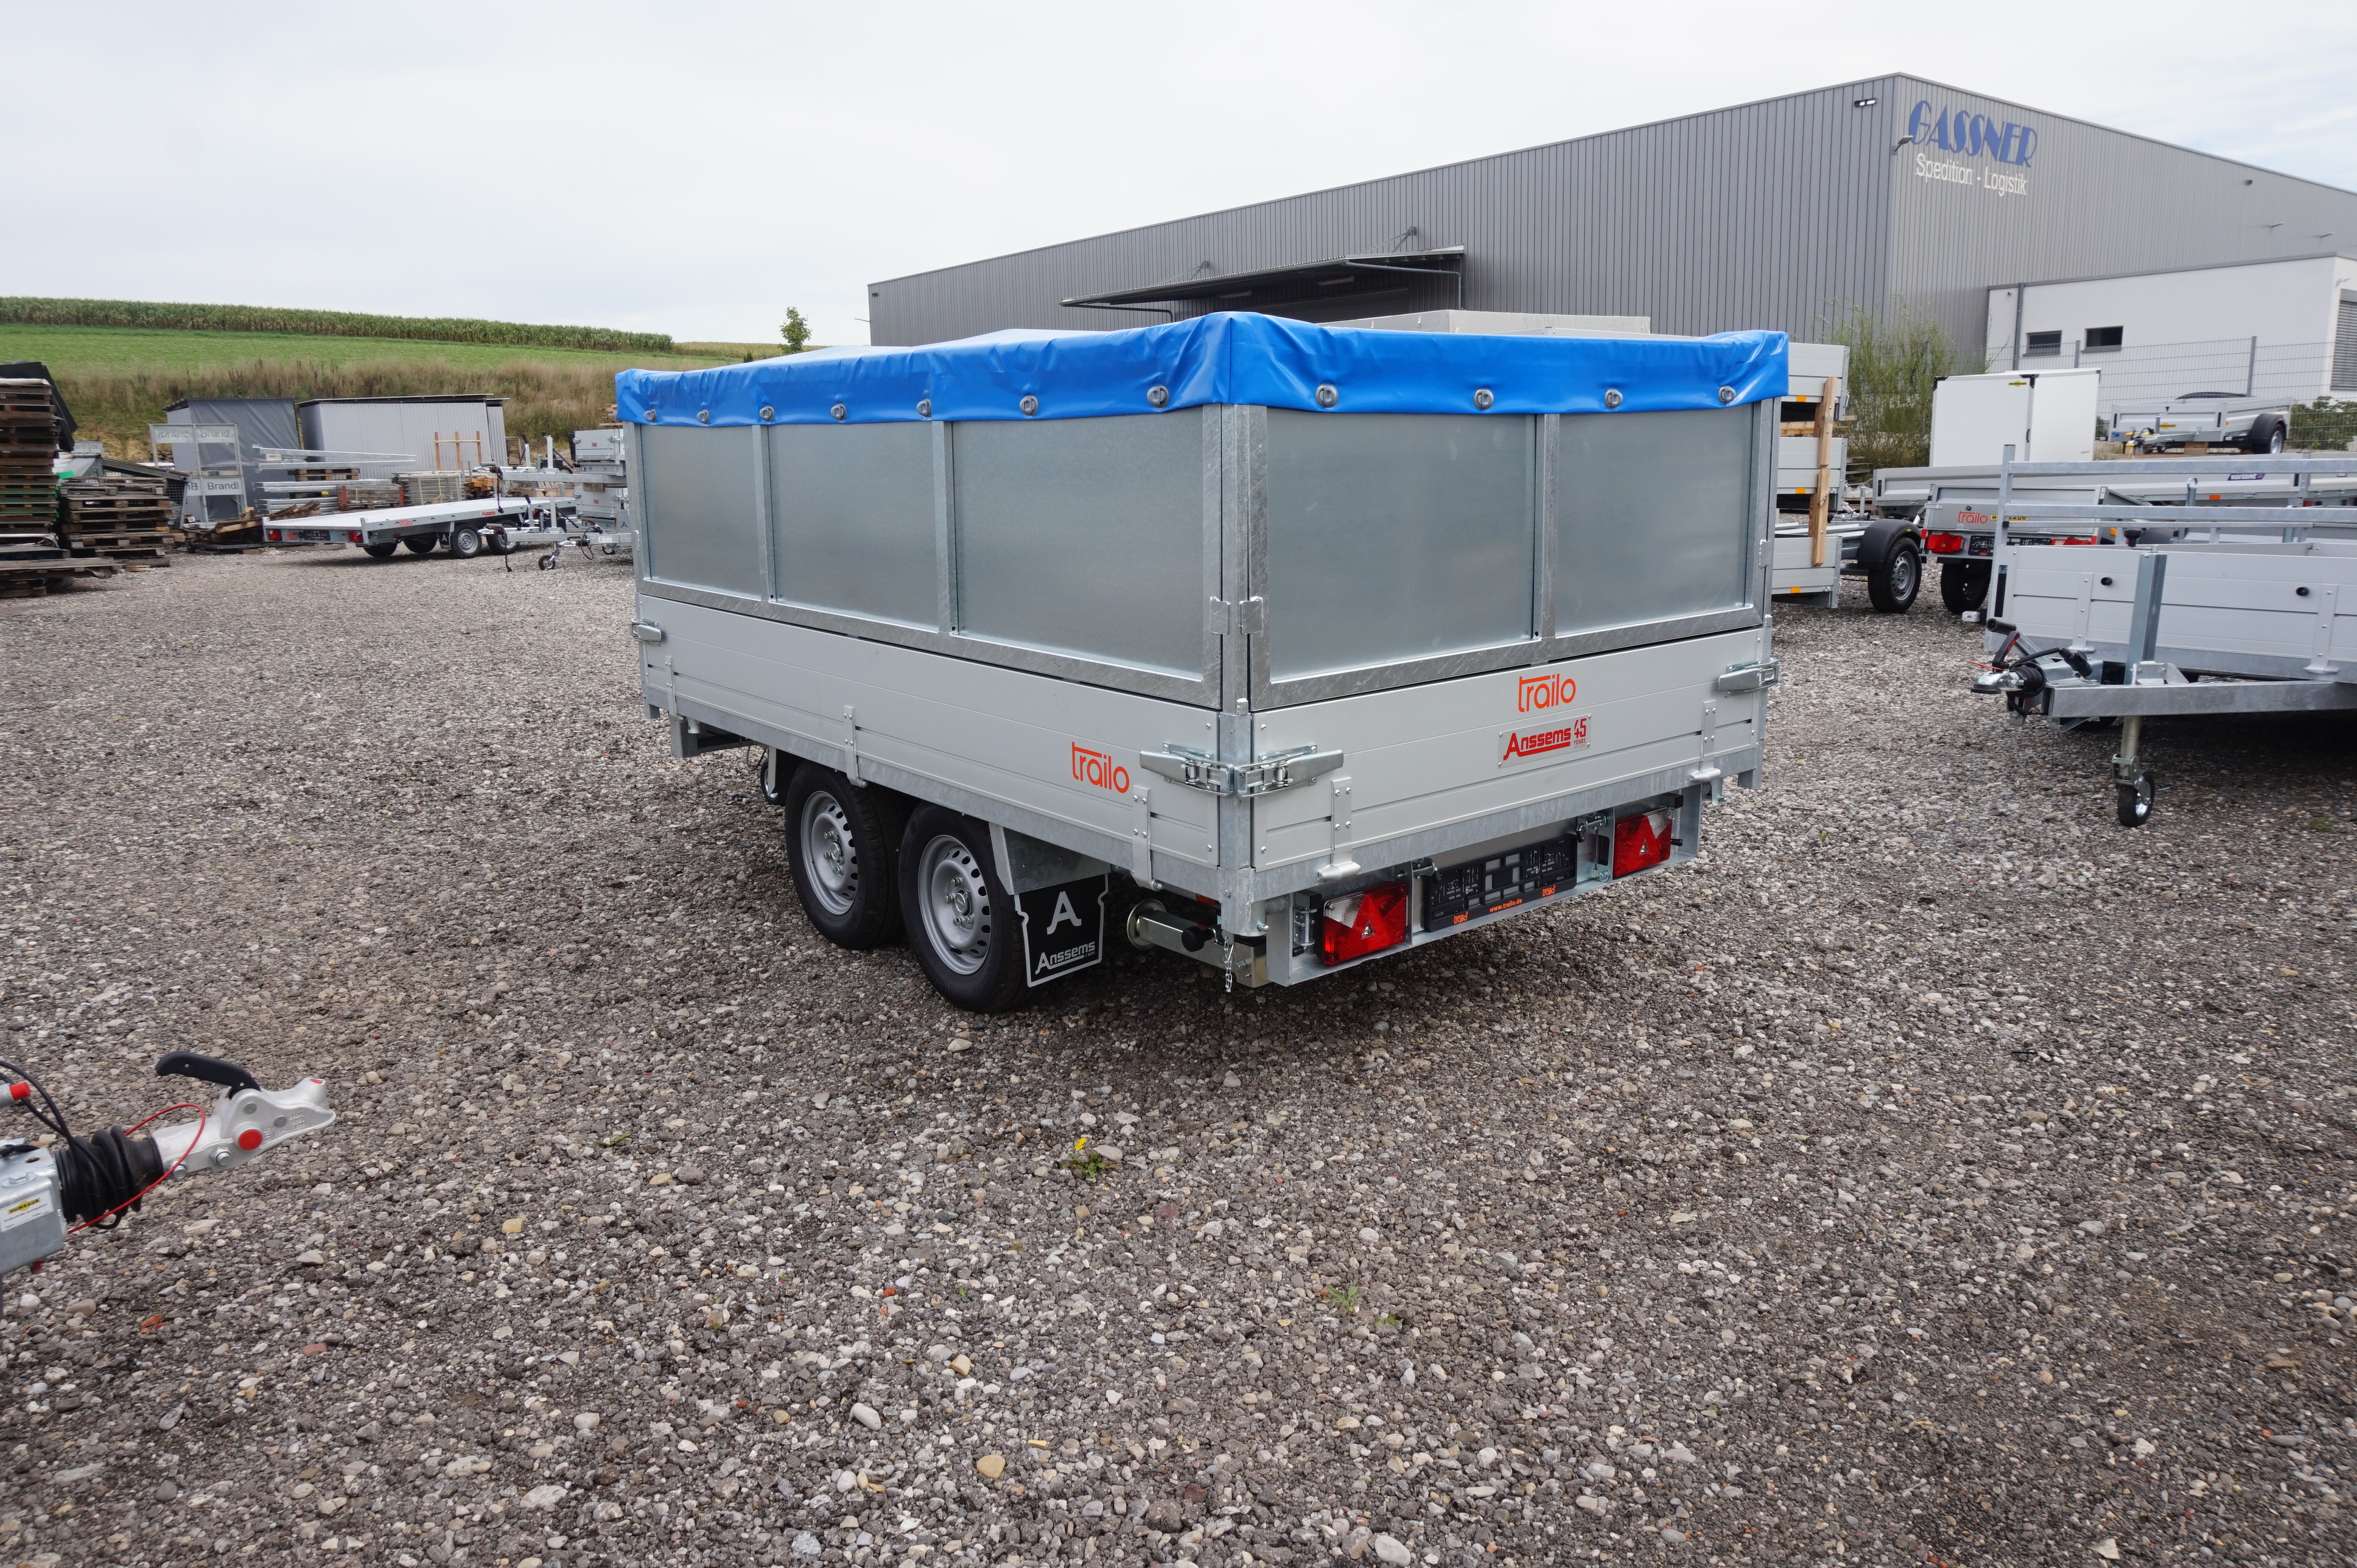 Anssems PKW Anhänger 3-Seitenkipper 2500 kg, Ladefläche 3,05x 1,78 m - Handhydraulik - Komplettpaket